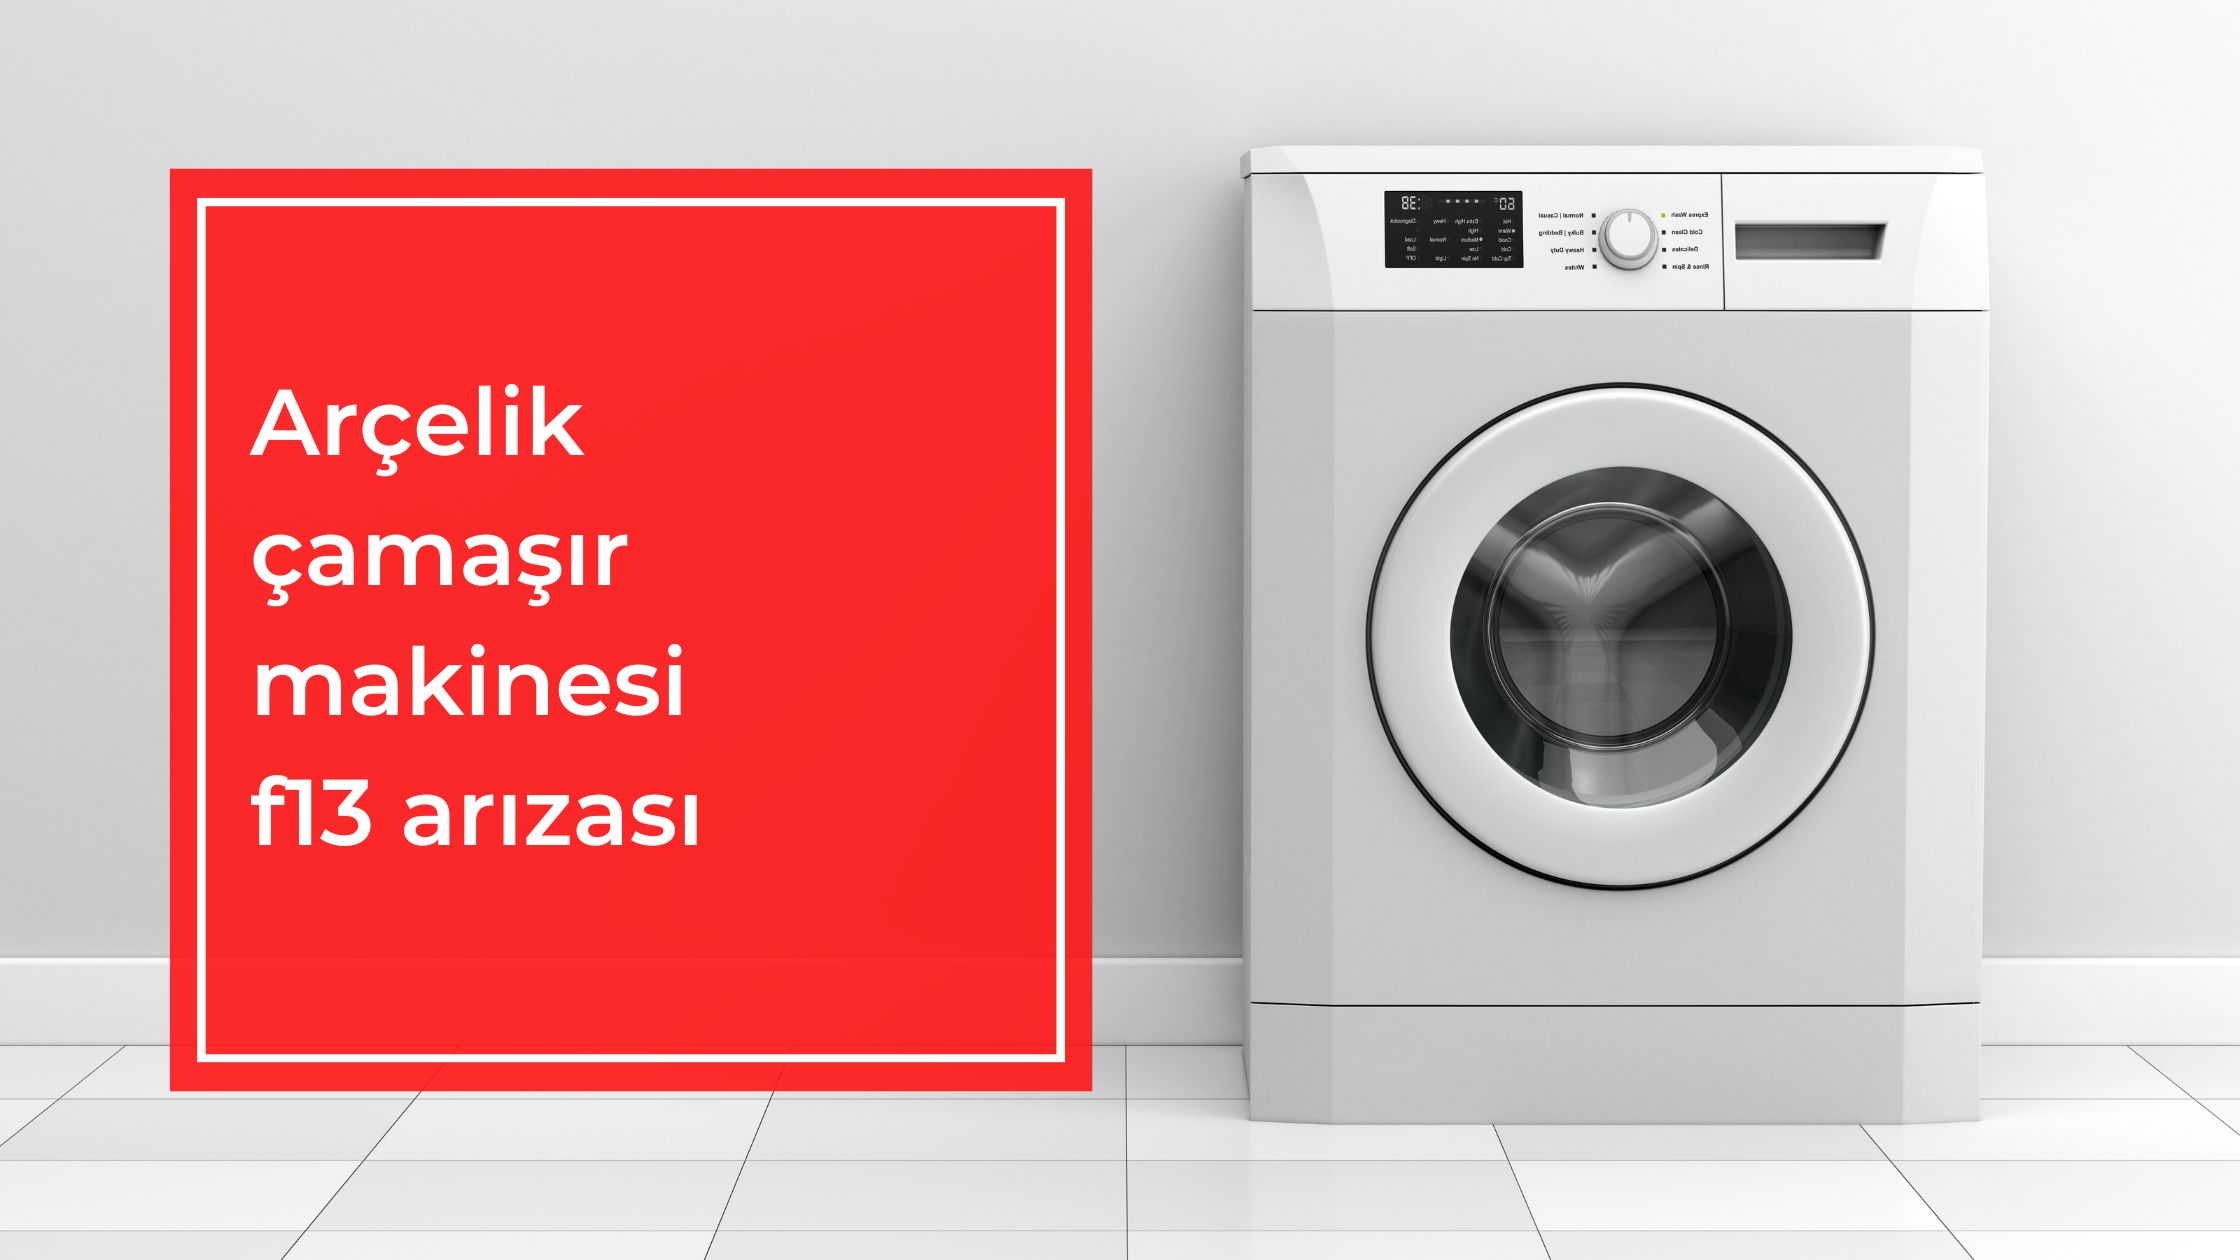 Arçelik çamaşır makinesi f13 arızası